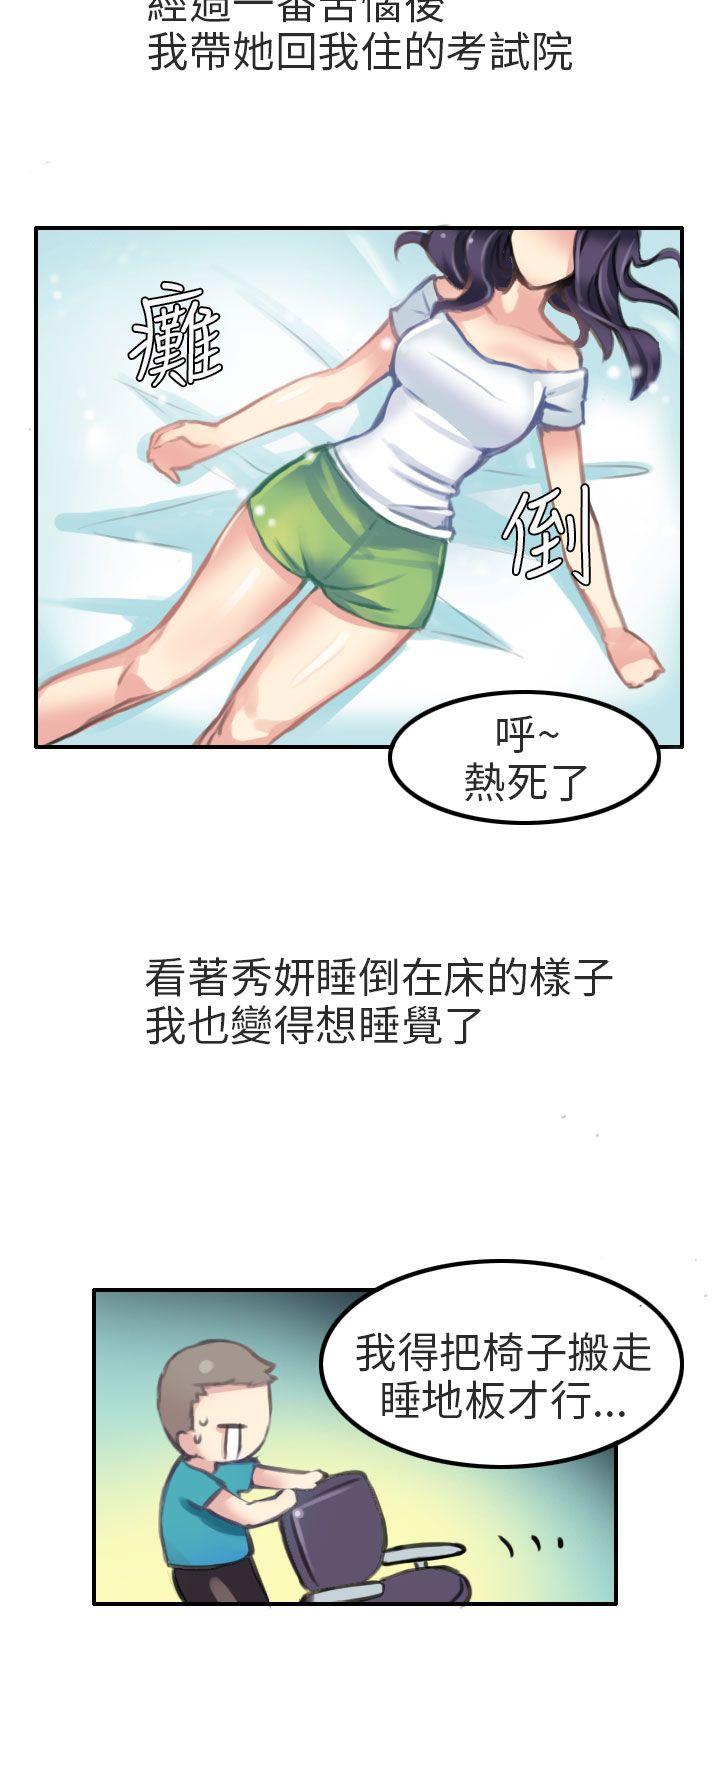 秘密Story第二季  考试院(上) 漫画图片10.jpg